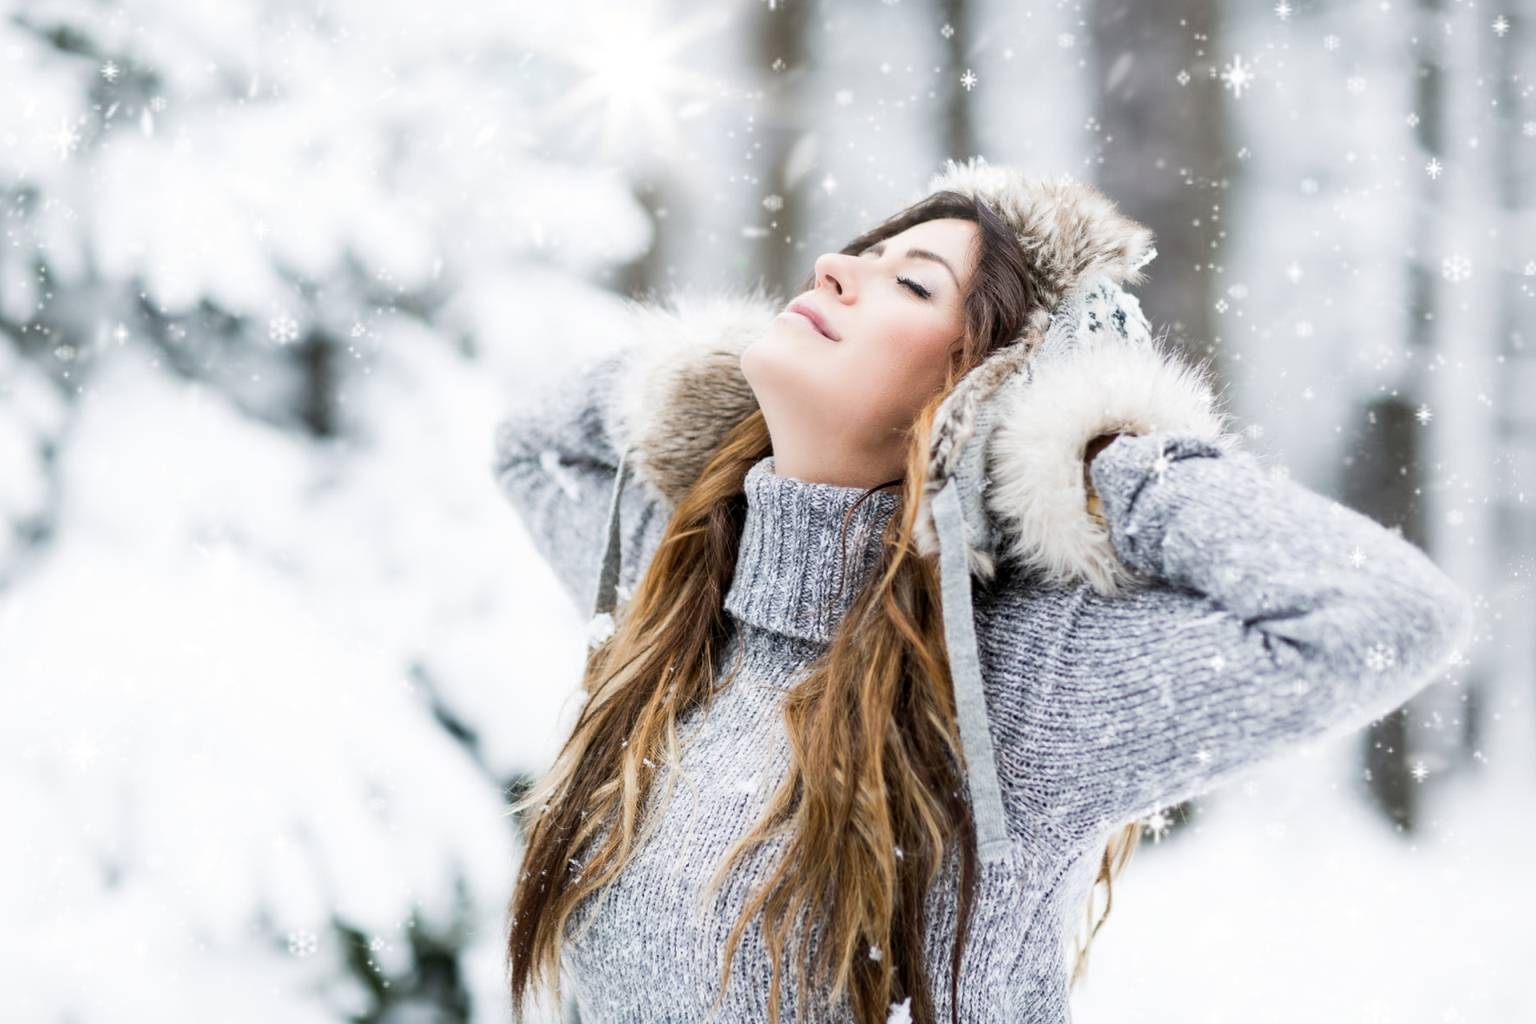 Domowe sposoby na przeziębienie. Młoda kobieta stoi na śniegu, w lesie, trzyma rękami czapkę i zadziera głowę w górę.